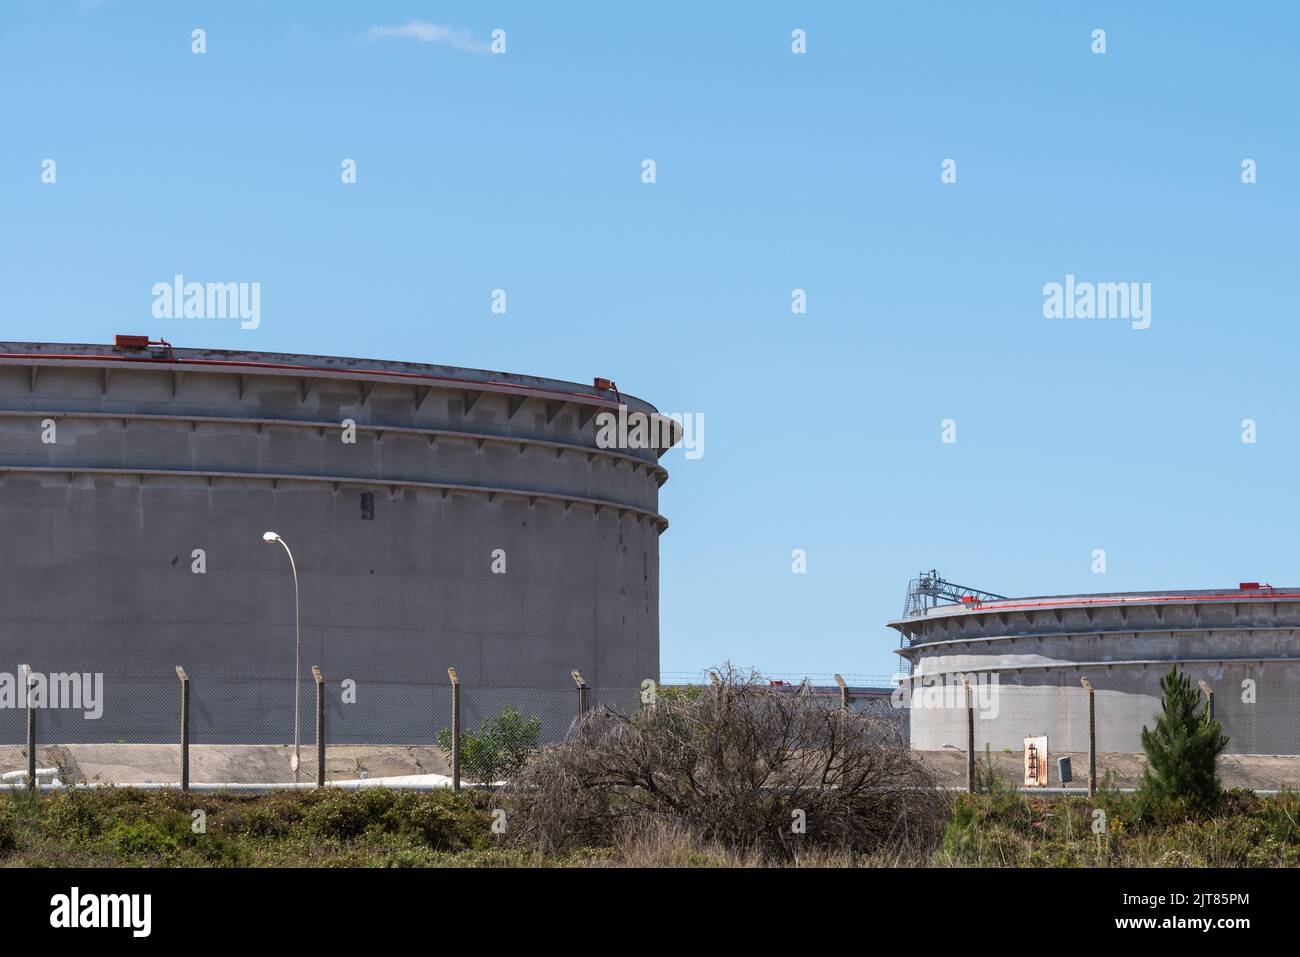 Vue extérieure sur les installations de la raffinerie GALP de Sines, Portugal sous ciel bleu Banque D'Images